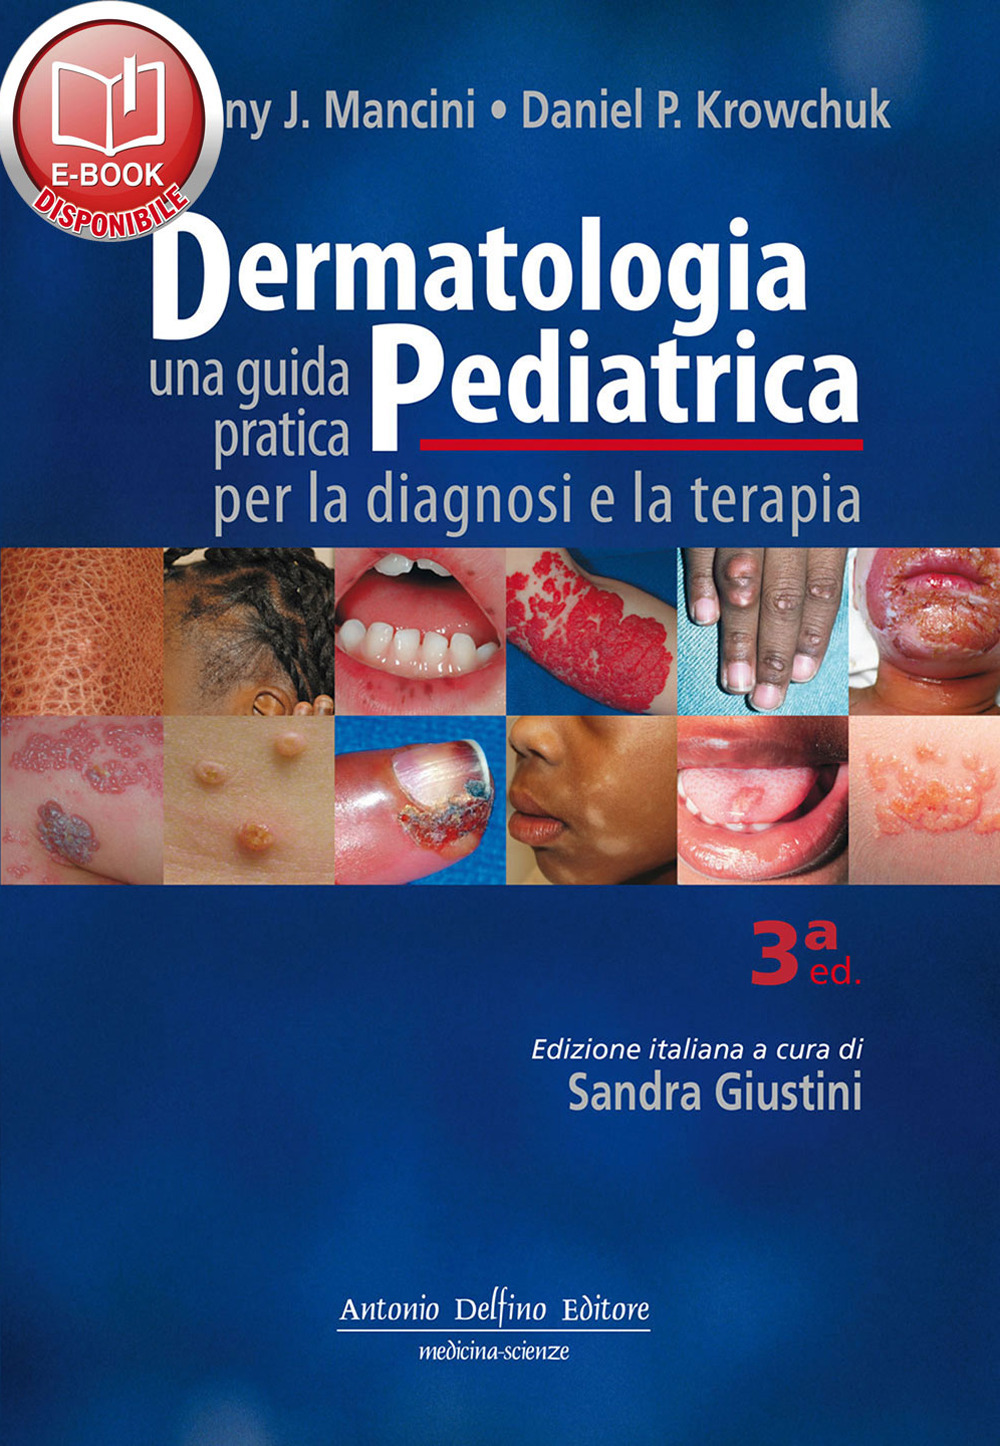 Dermatologia pediatrica. Una guida pratica per la diagnosi e la terapia